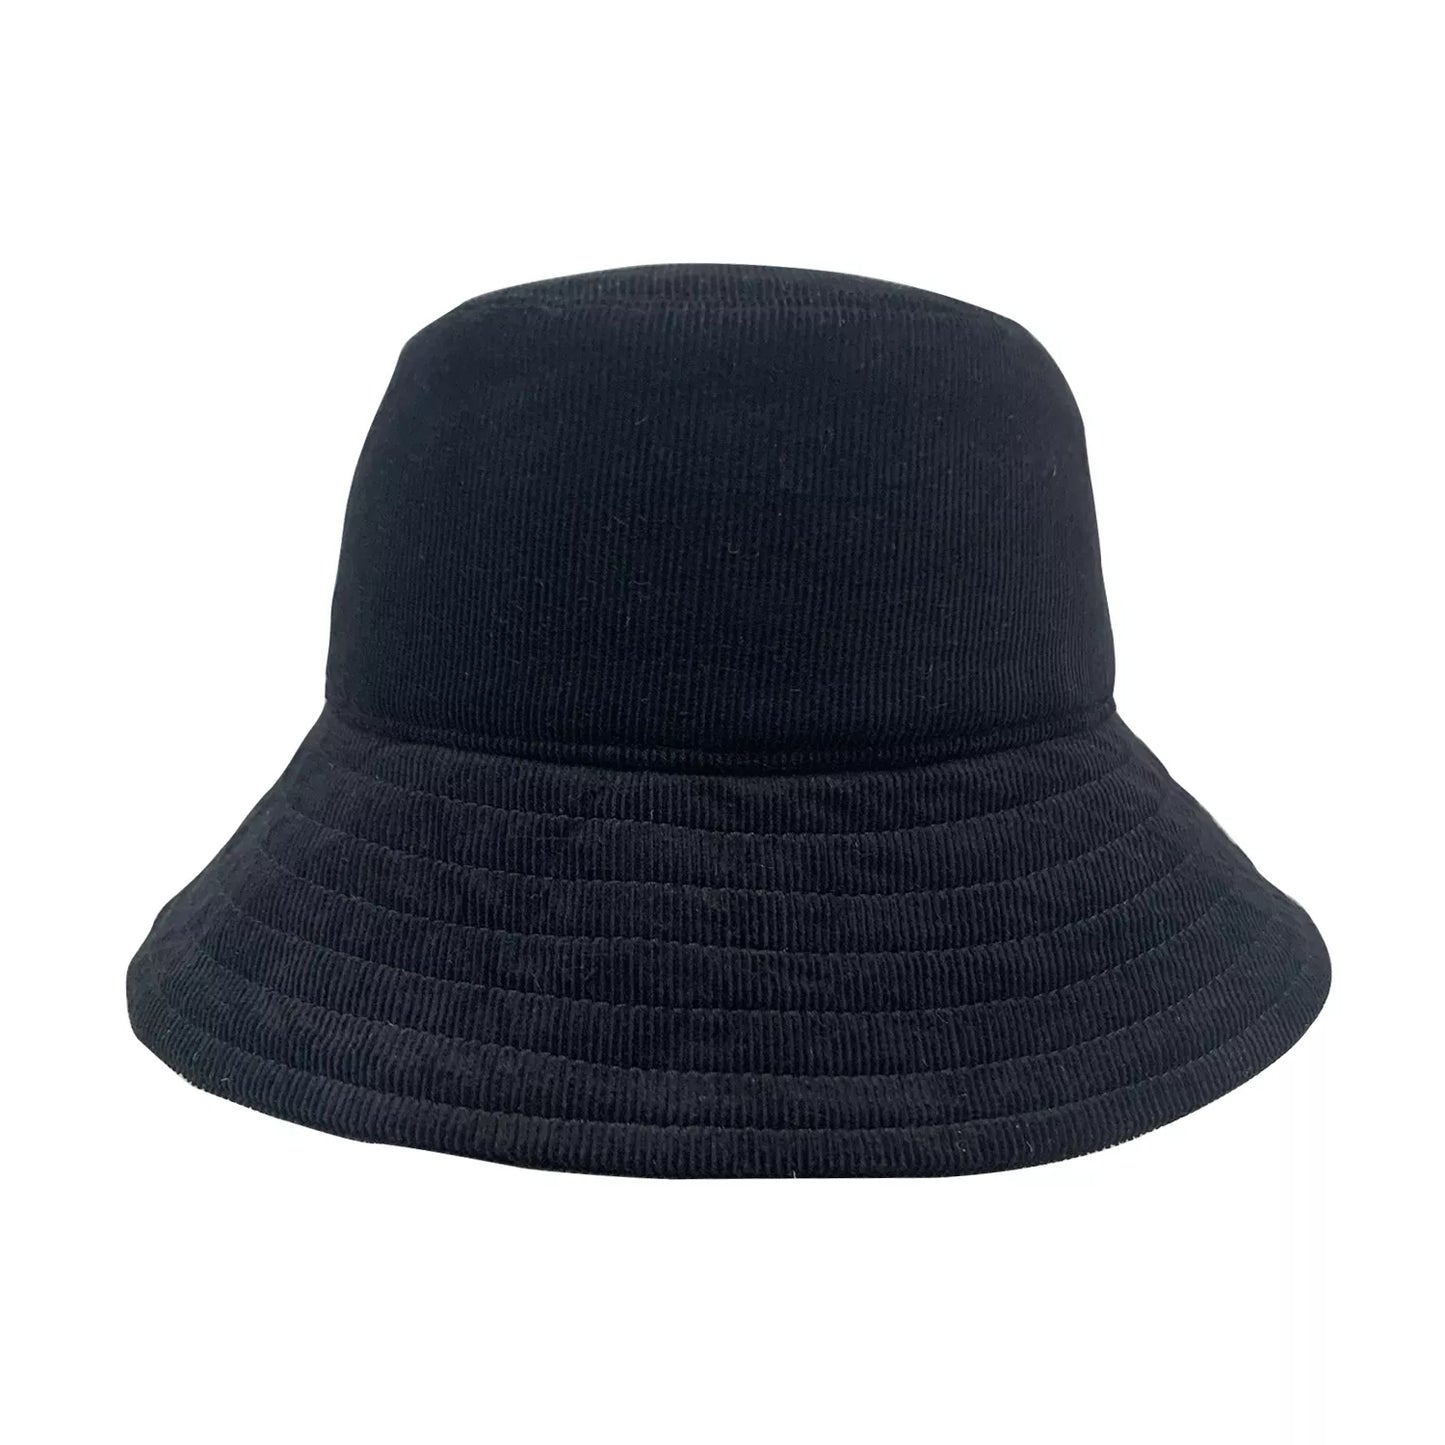 Sombrero de pescador de cordón